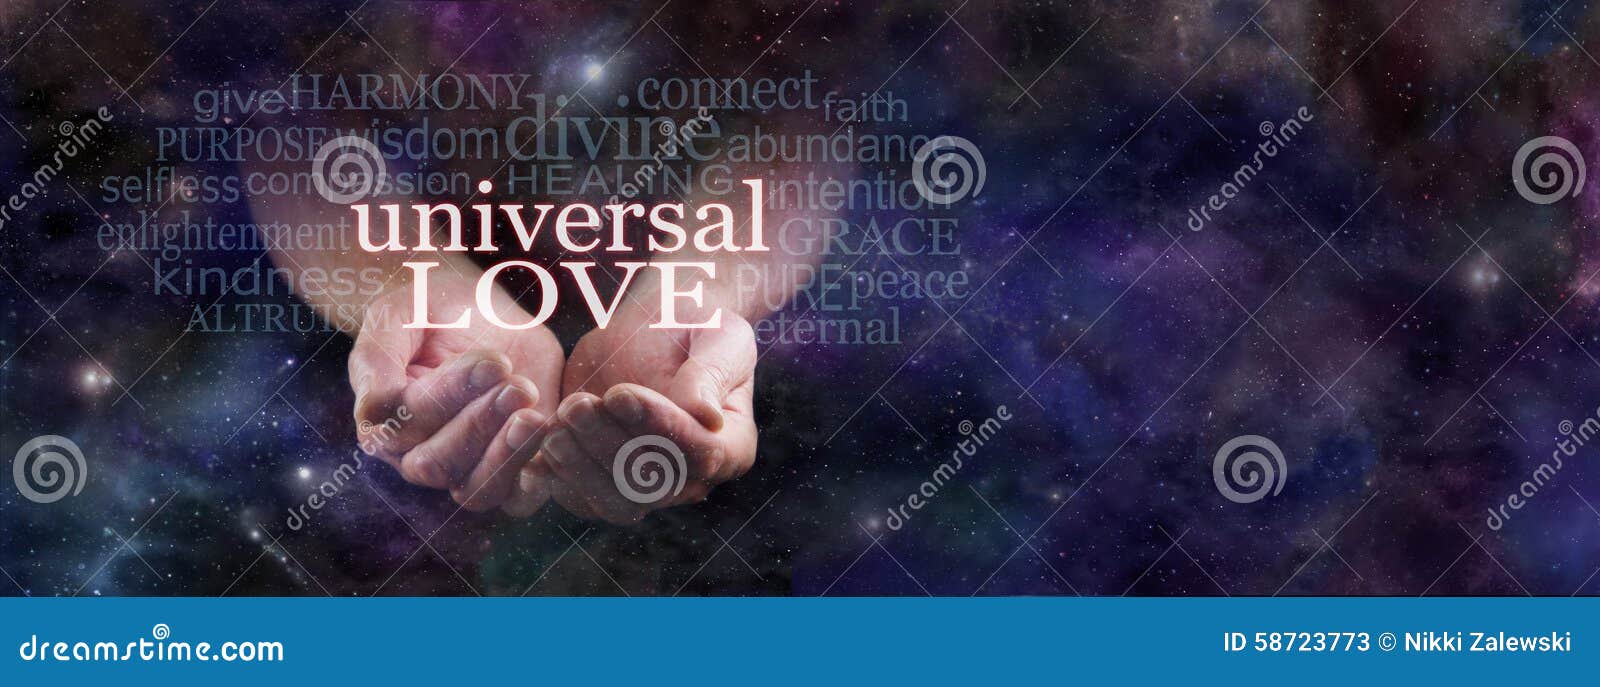 sharing universal love